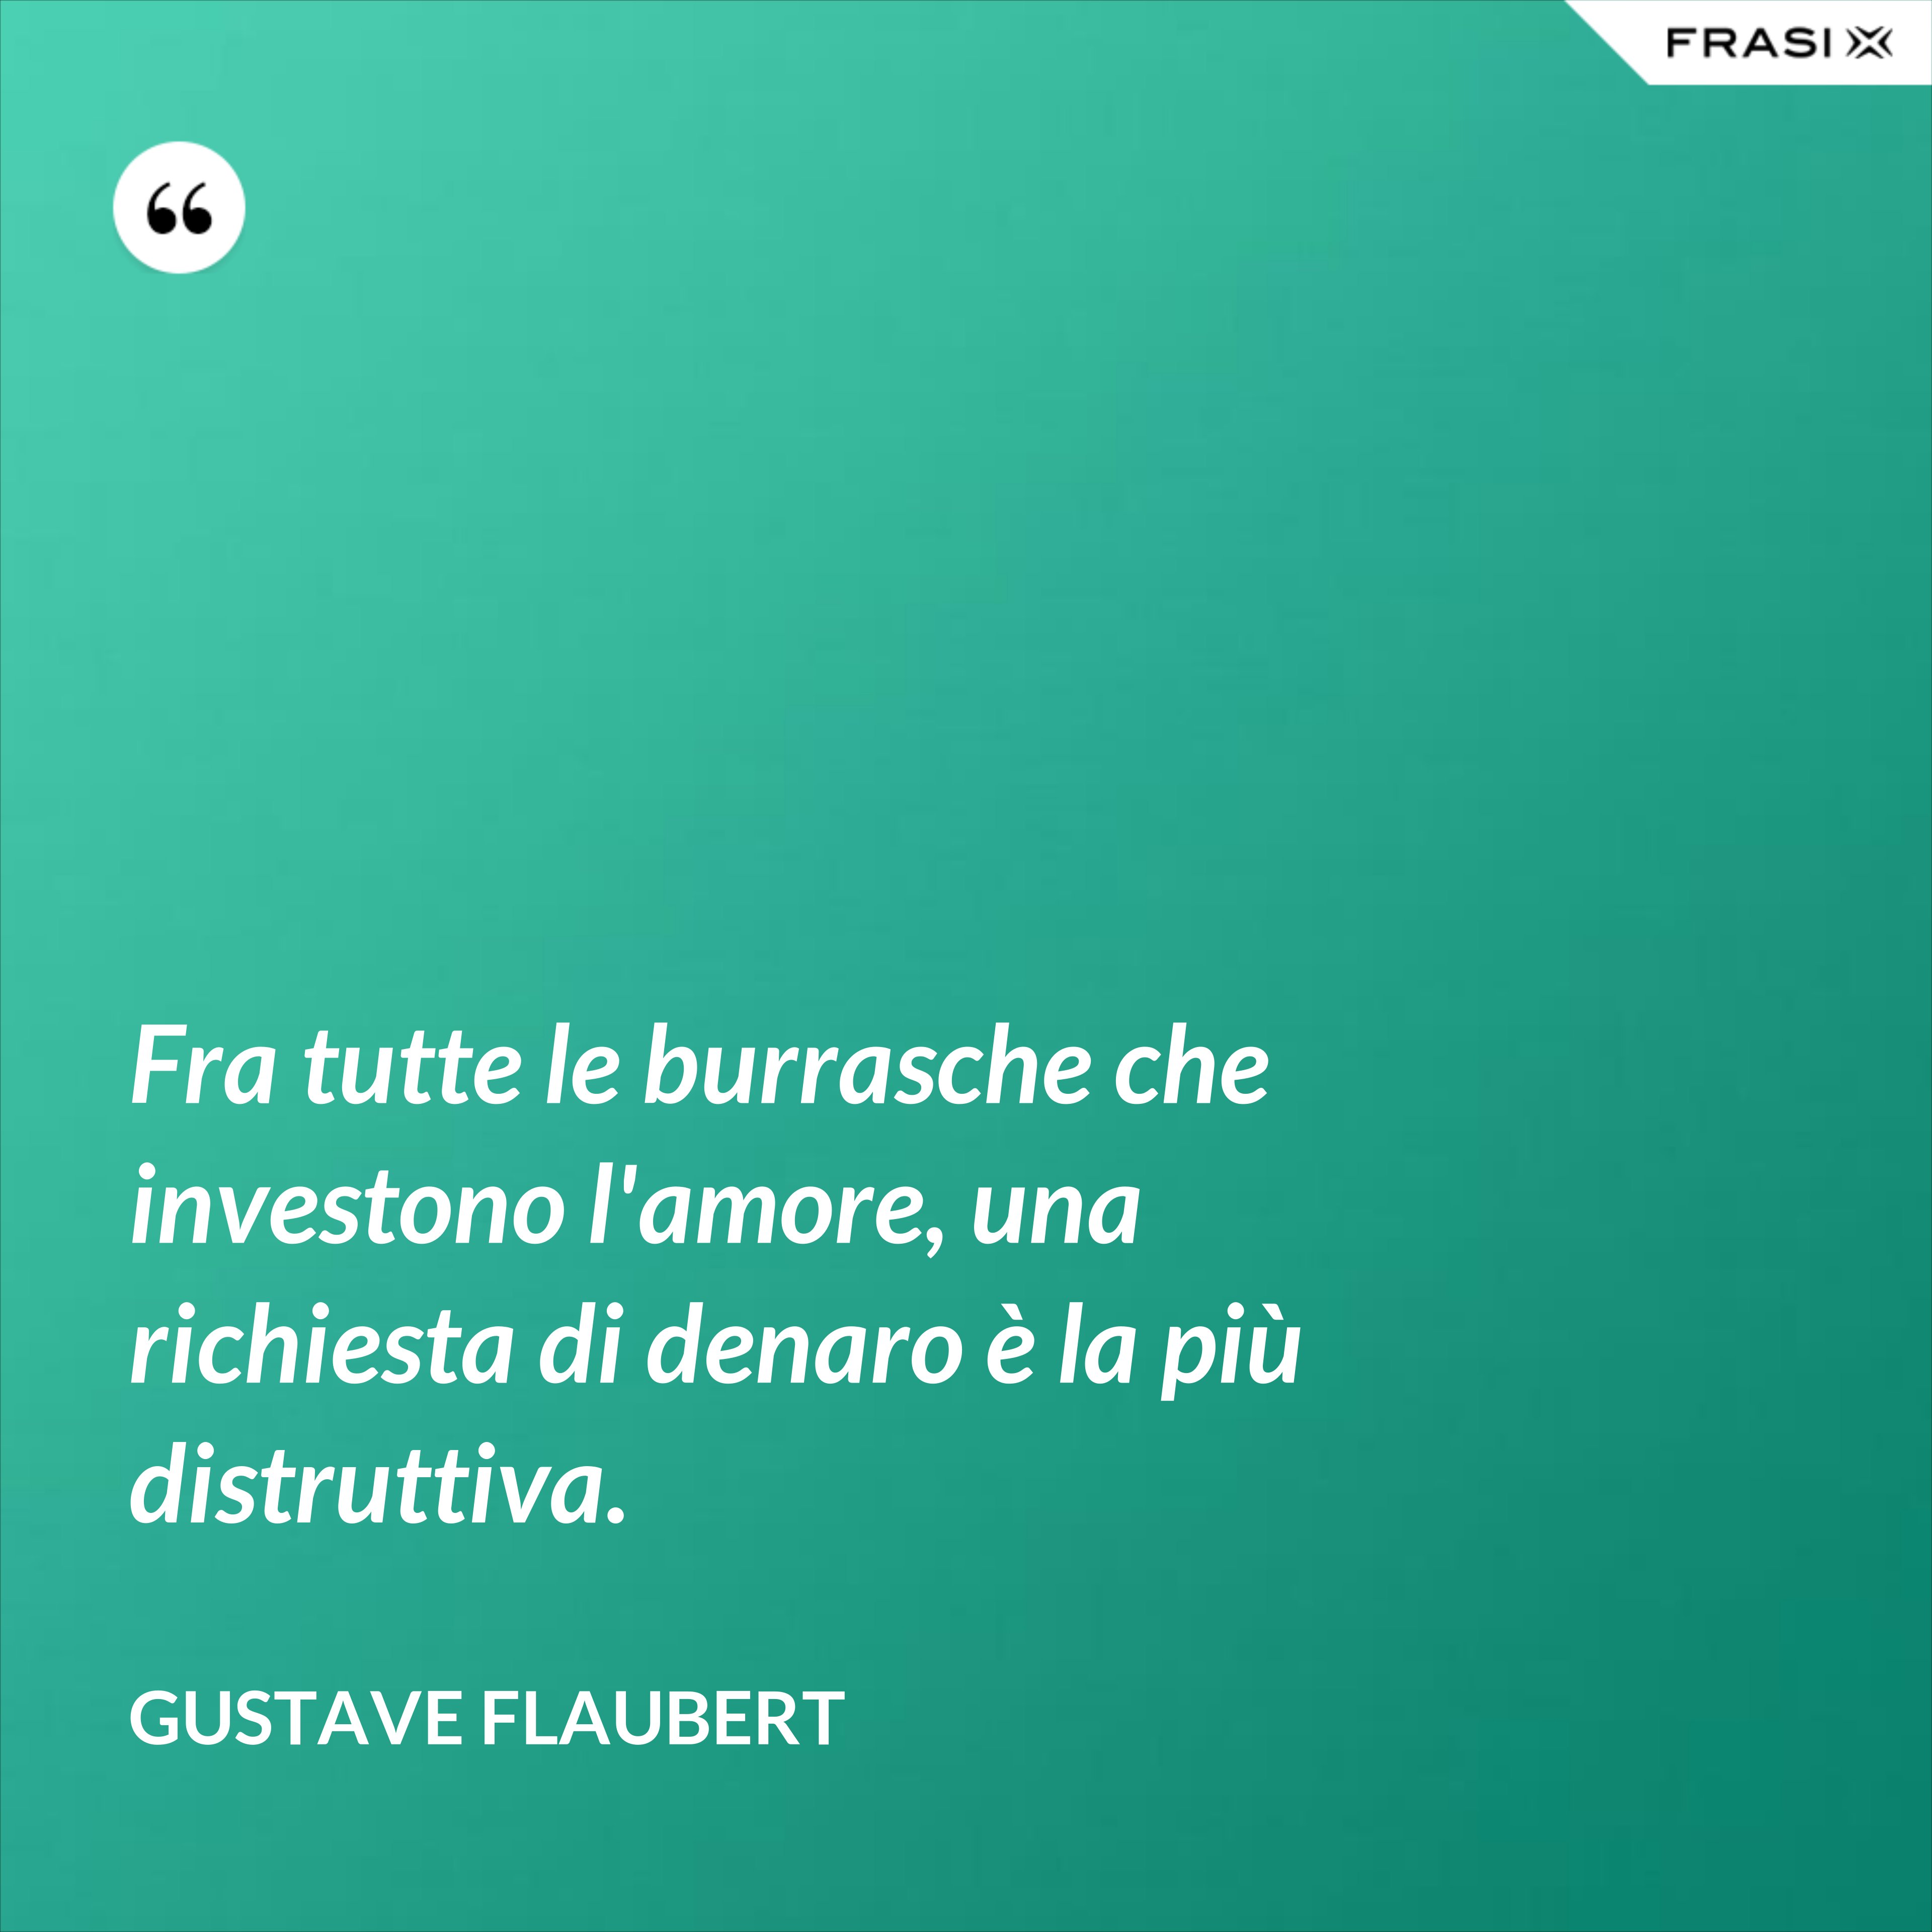 Fra tutte le burrasche che investono l'amore, una richiesta di denaro è la più distruttiva. - Gustave Flaubert